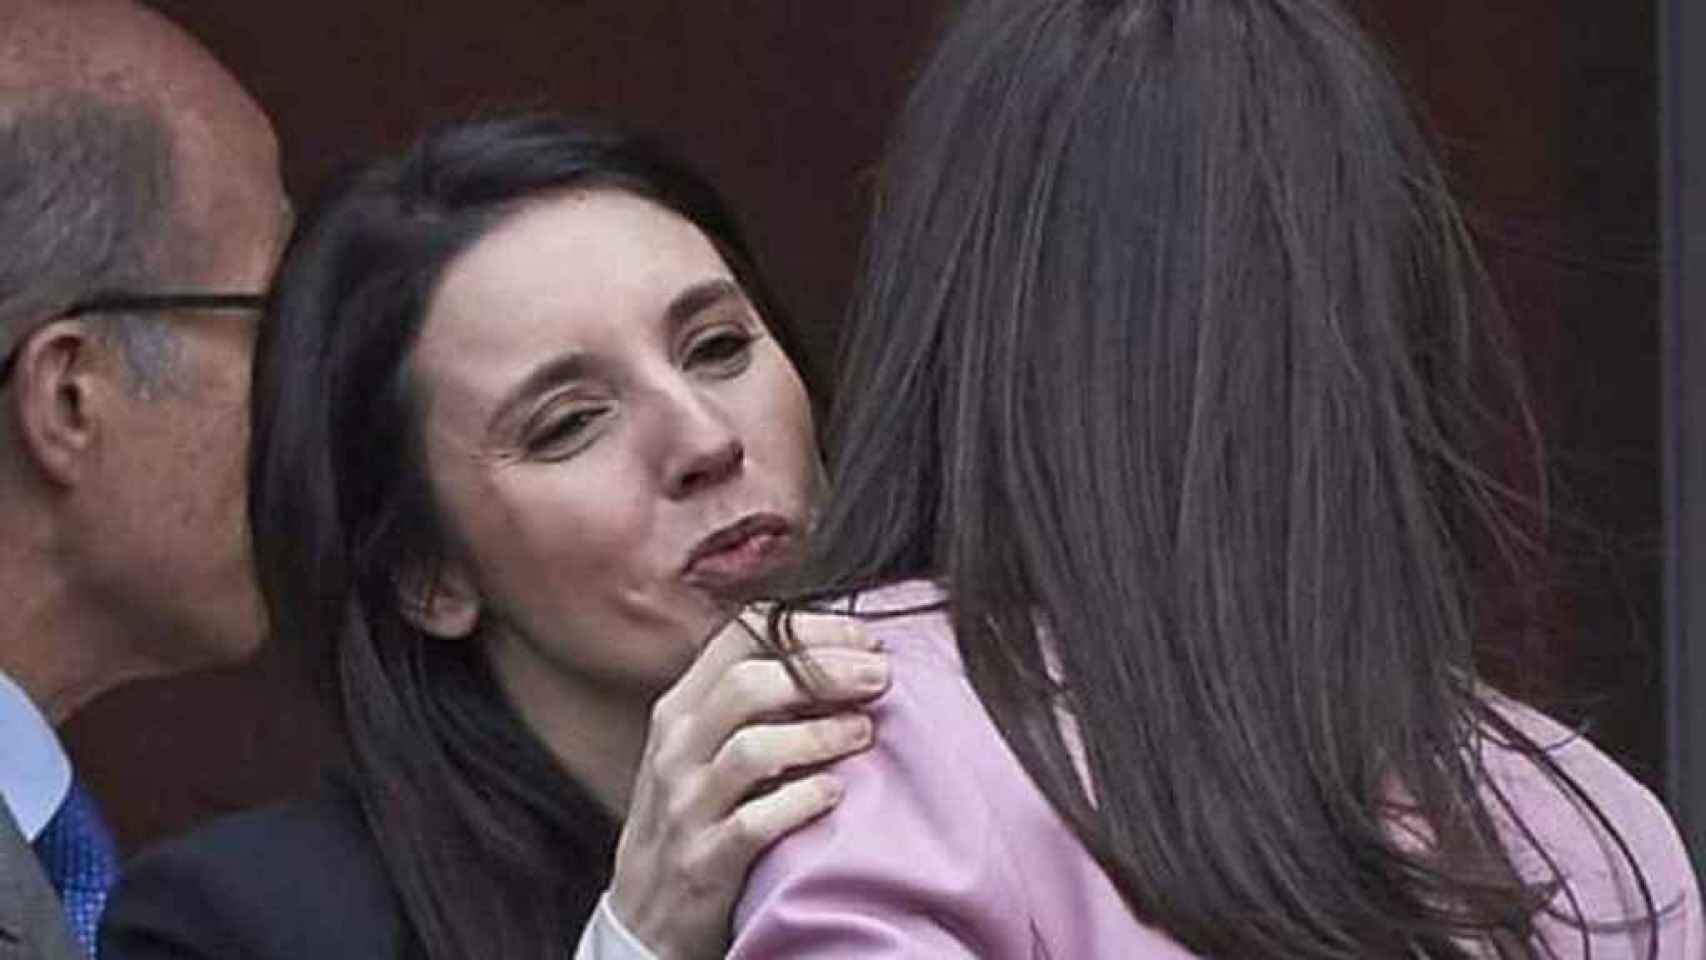 La ministra Montero, positivo en coronavirus, recibió y se despidió de la reina Letizia dándole dos besos.